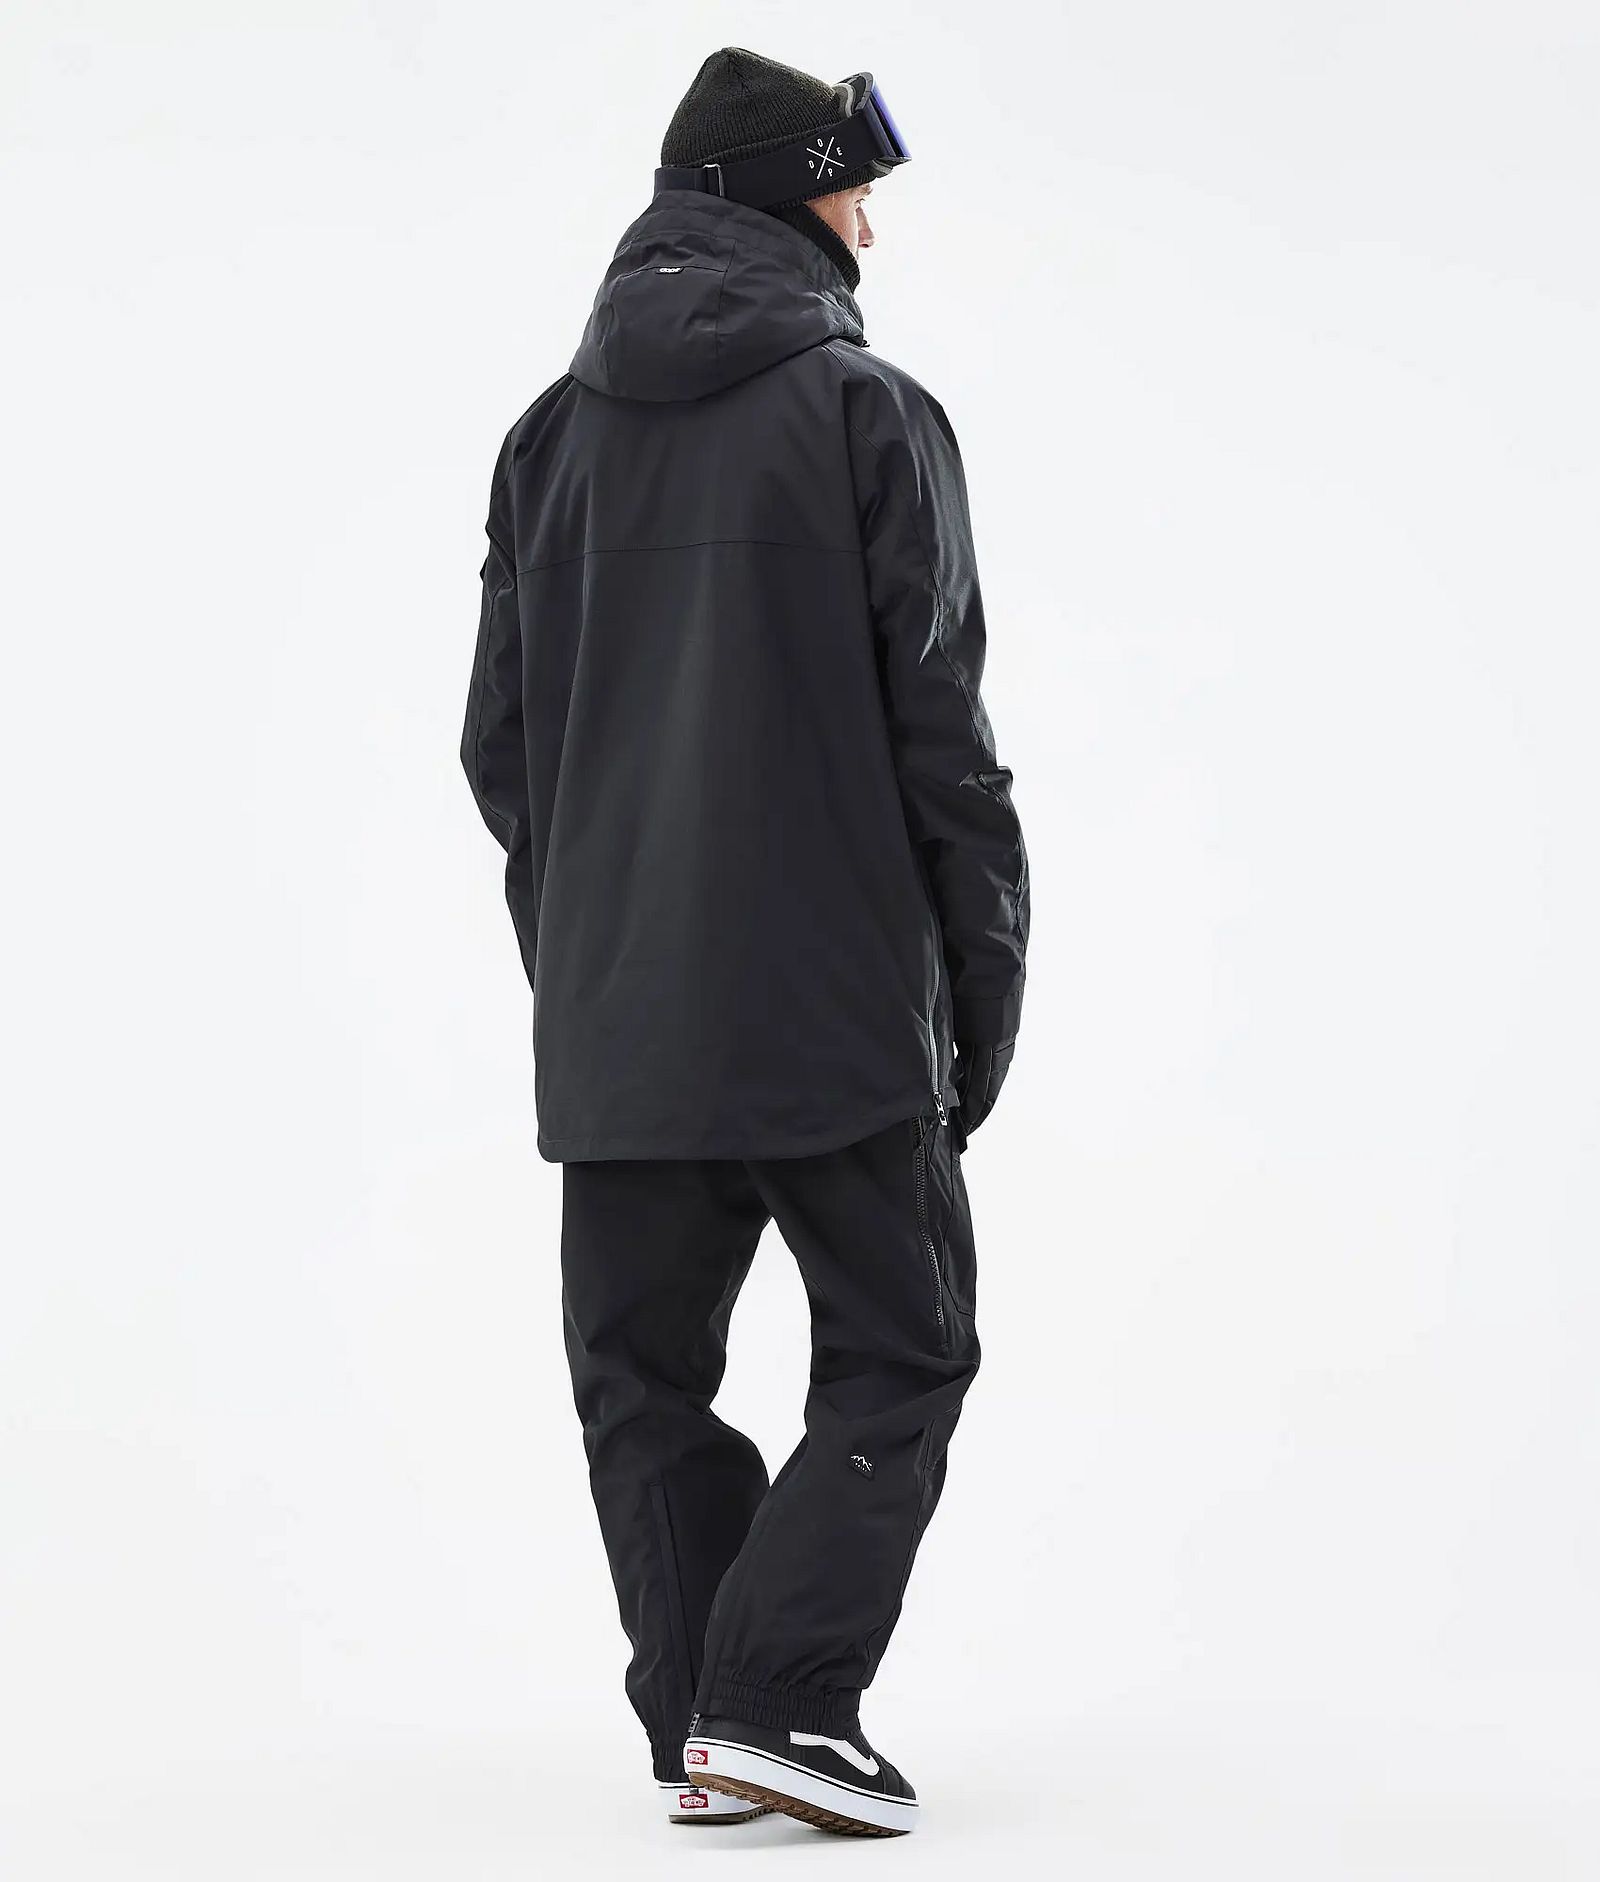 Dope Akin Snowboardový Outfit Pánské Black, Image 2 of 2